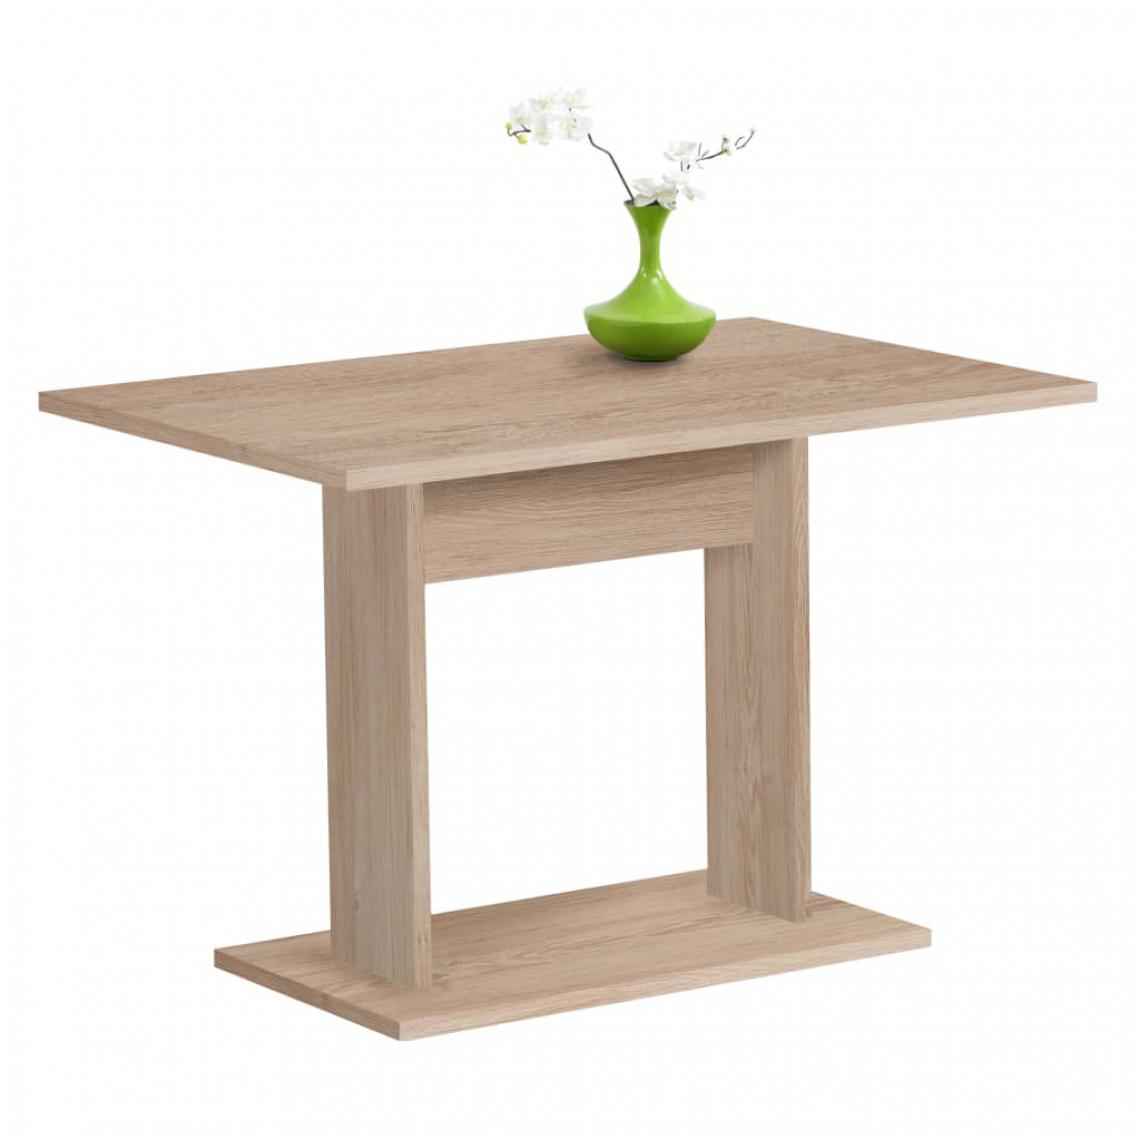 Icaverne - Superbe Tables categorie Copenhague FMD Table de salle à manger 110 cm Chêne - Tables à manger